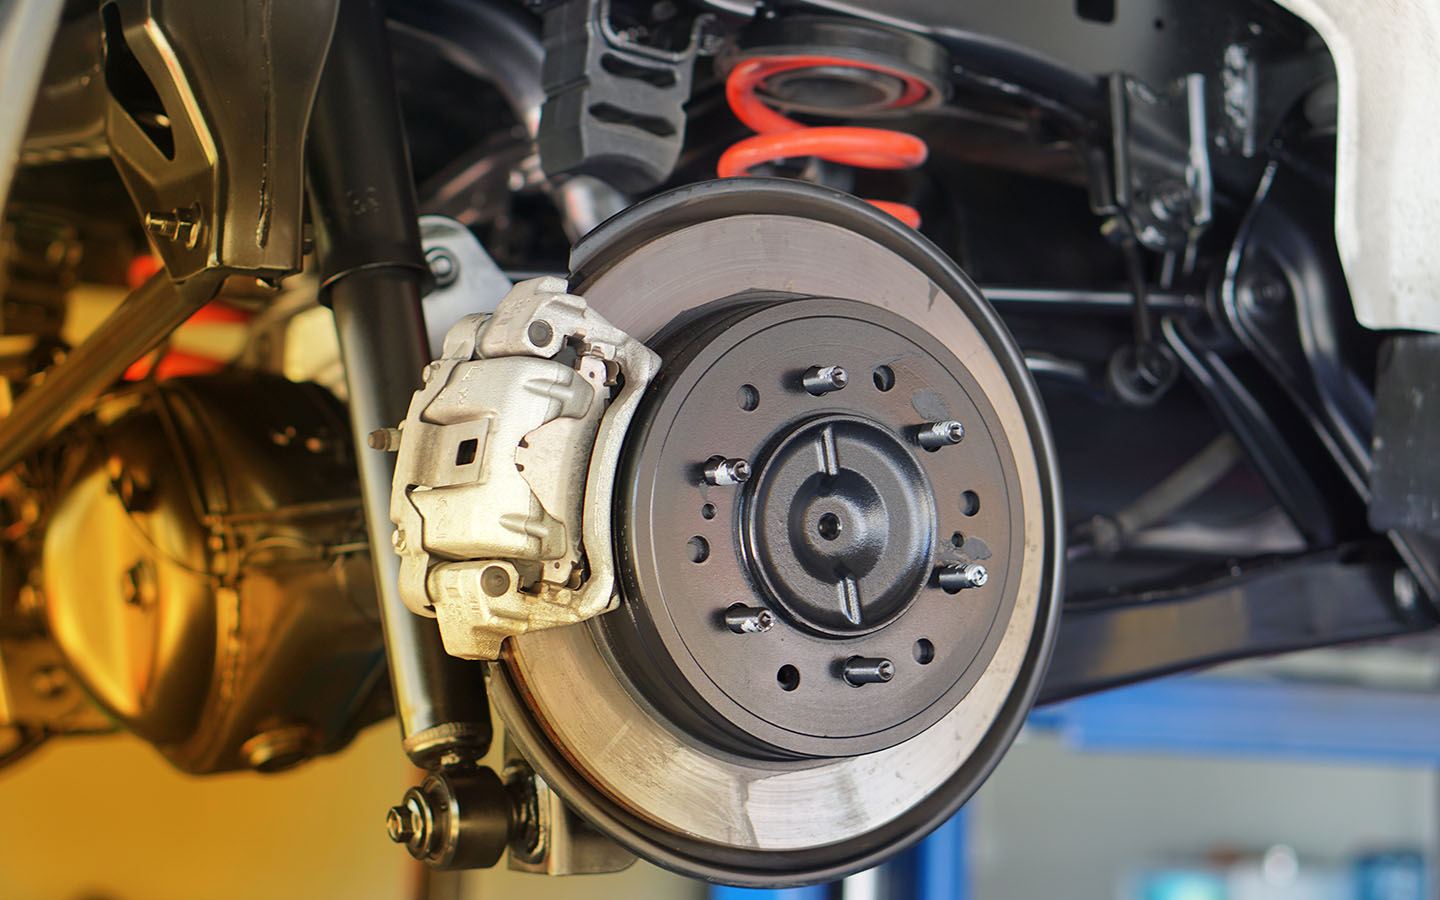 ensure brake maintenance to decrease braking distance